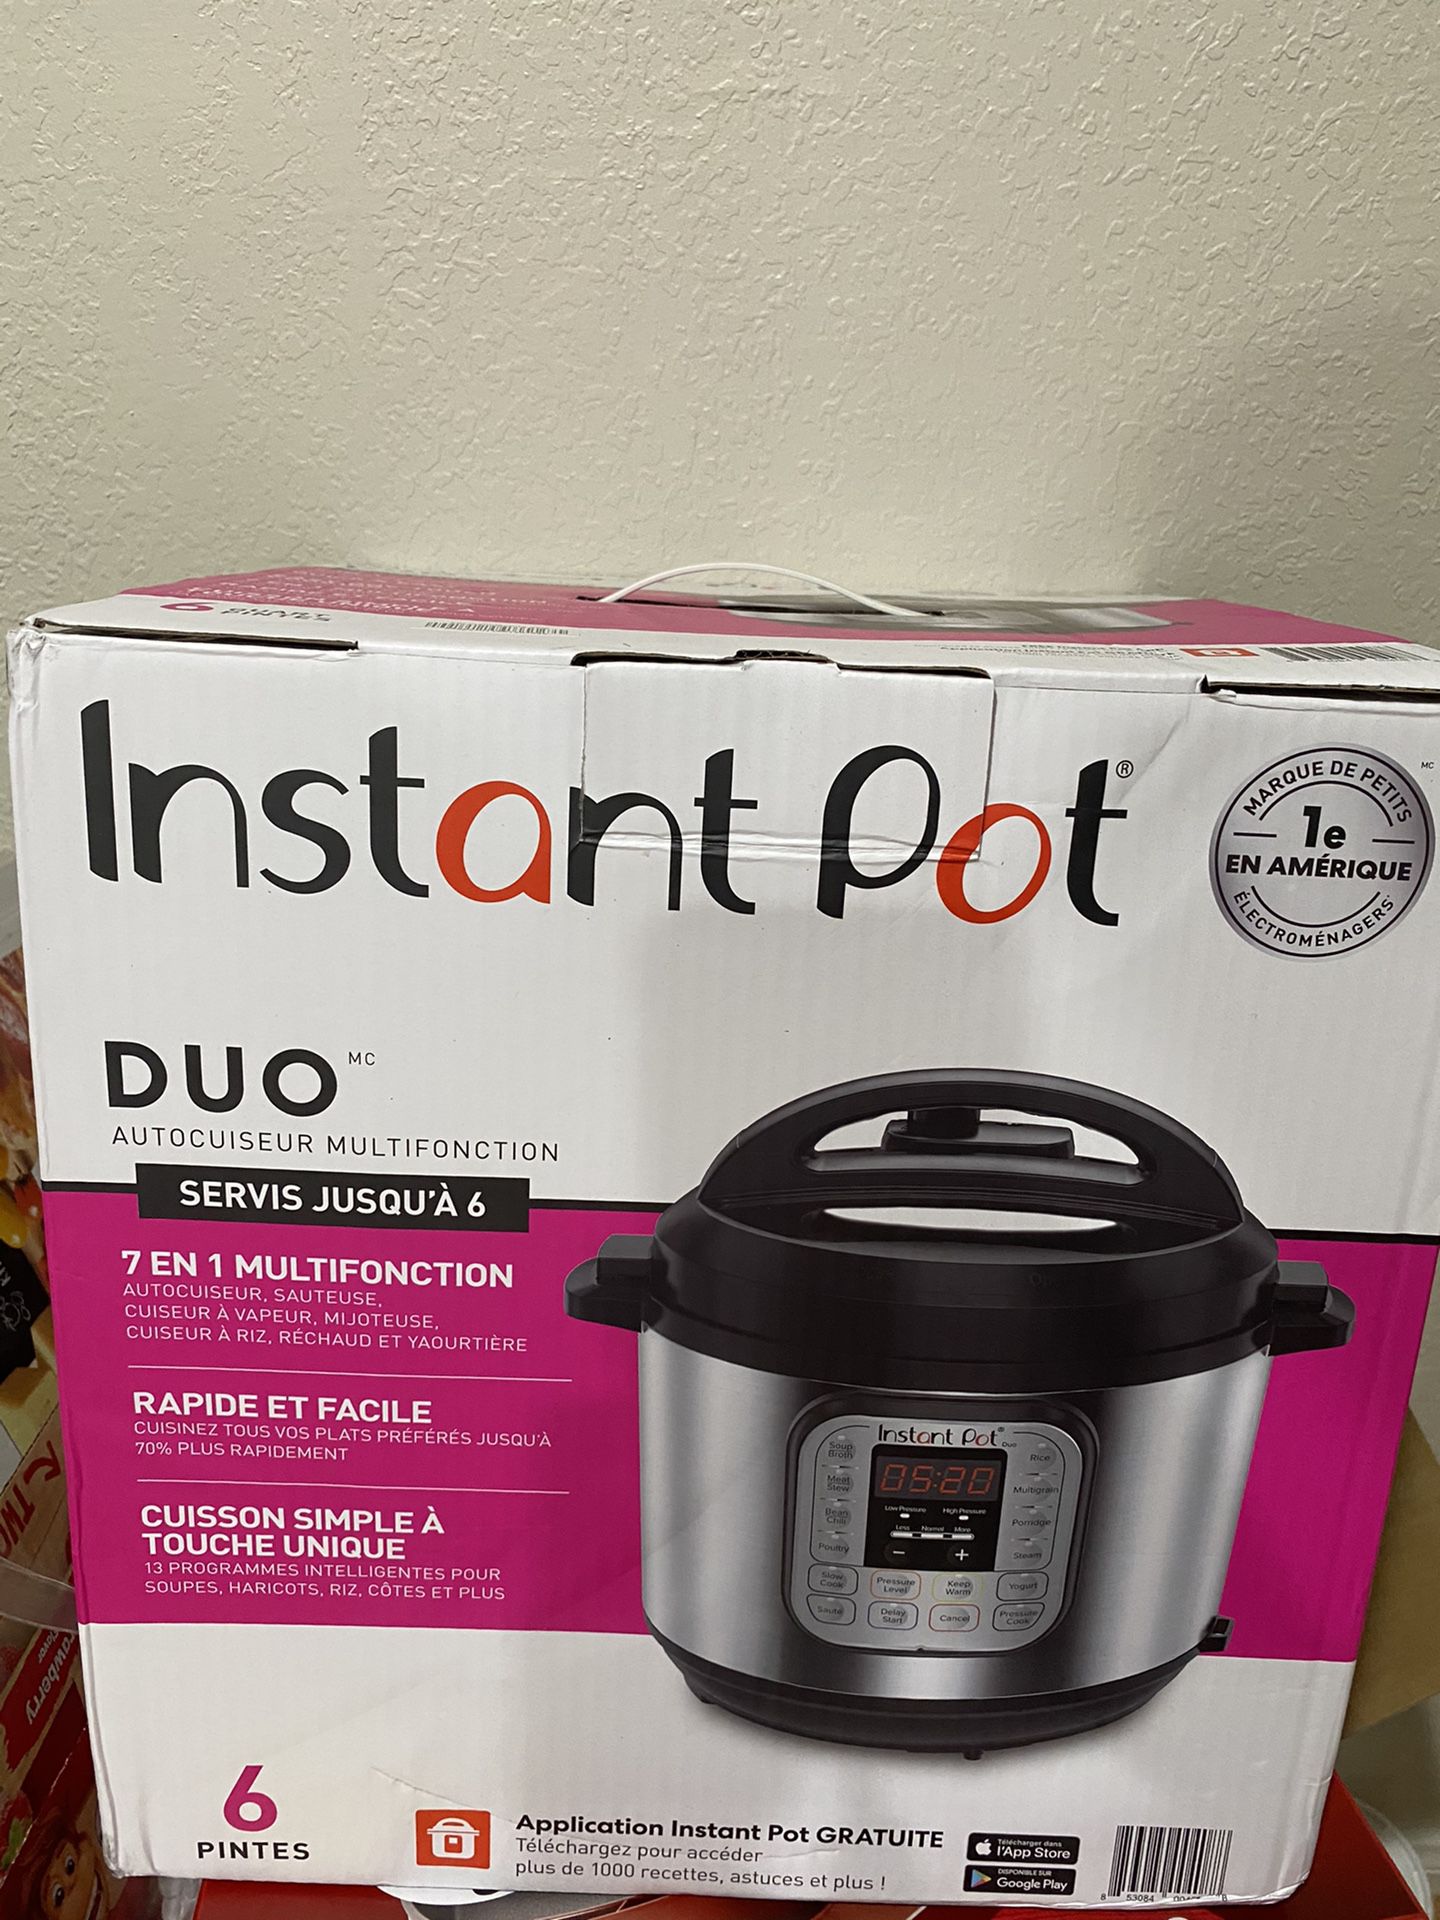 New Instant Pot Duo 6 Quart